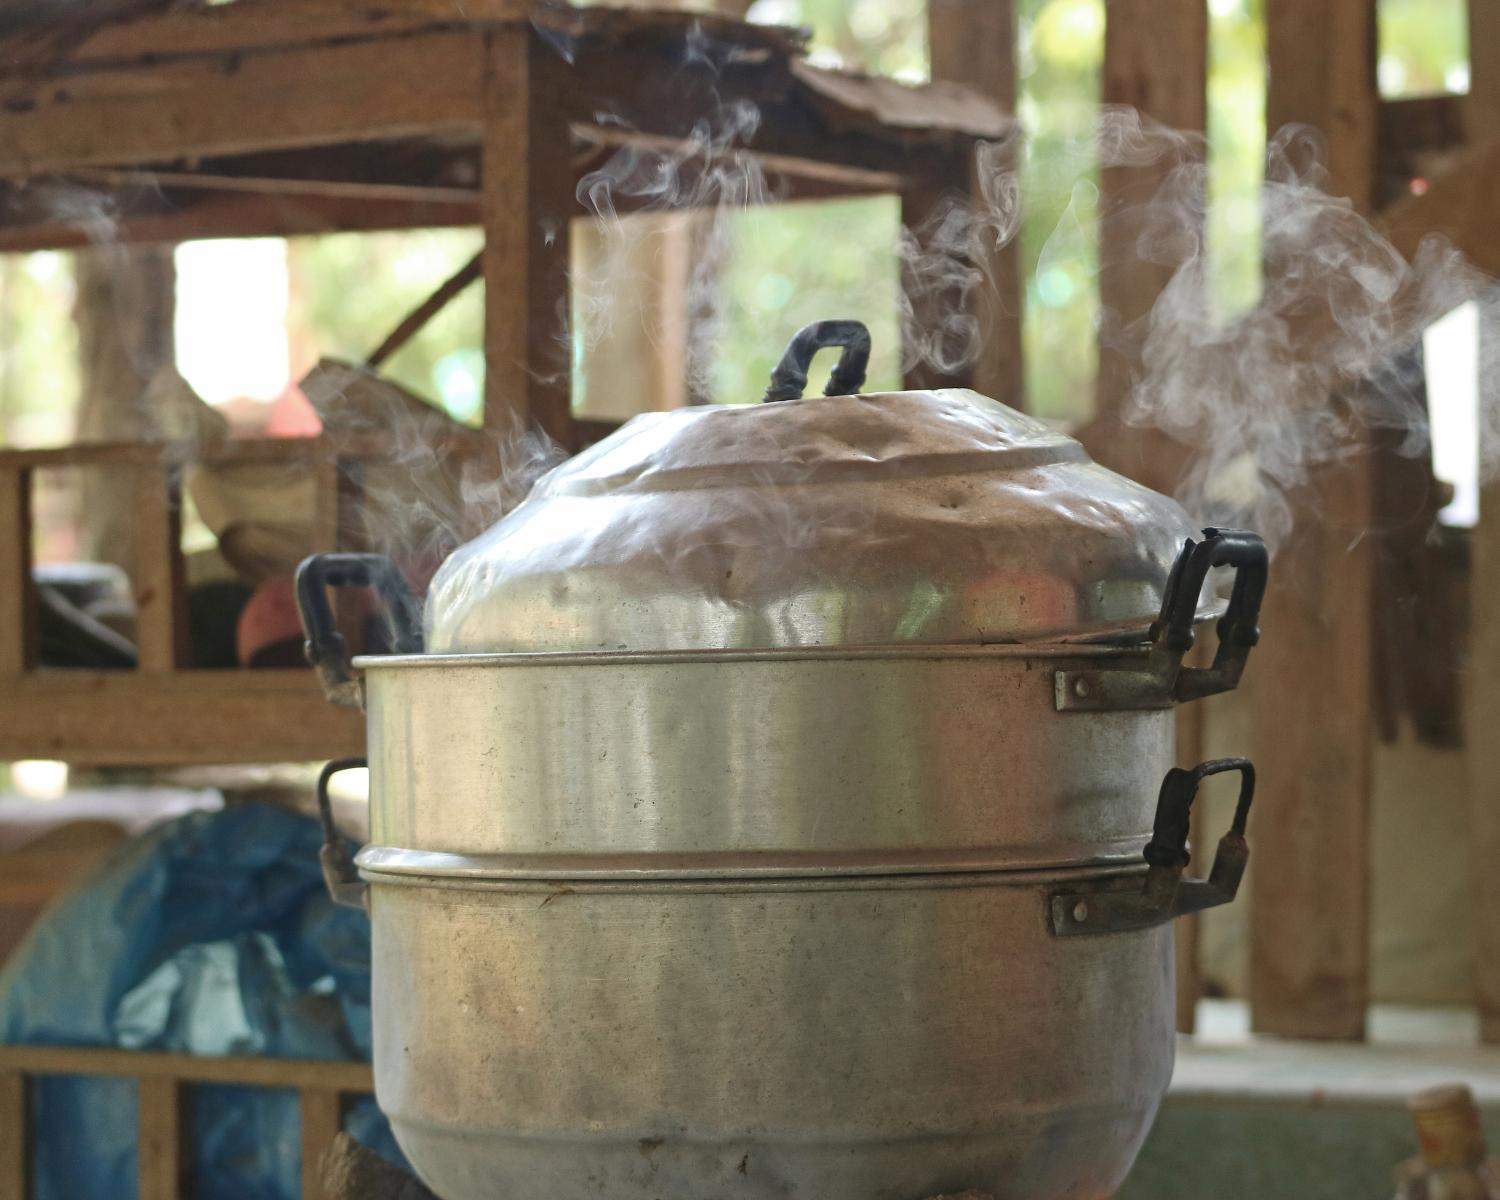 Cách làm xôi đậu đen nước cốt dừa bằng nồi cơm điện